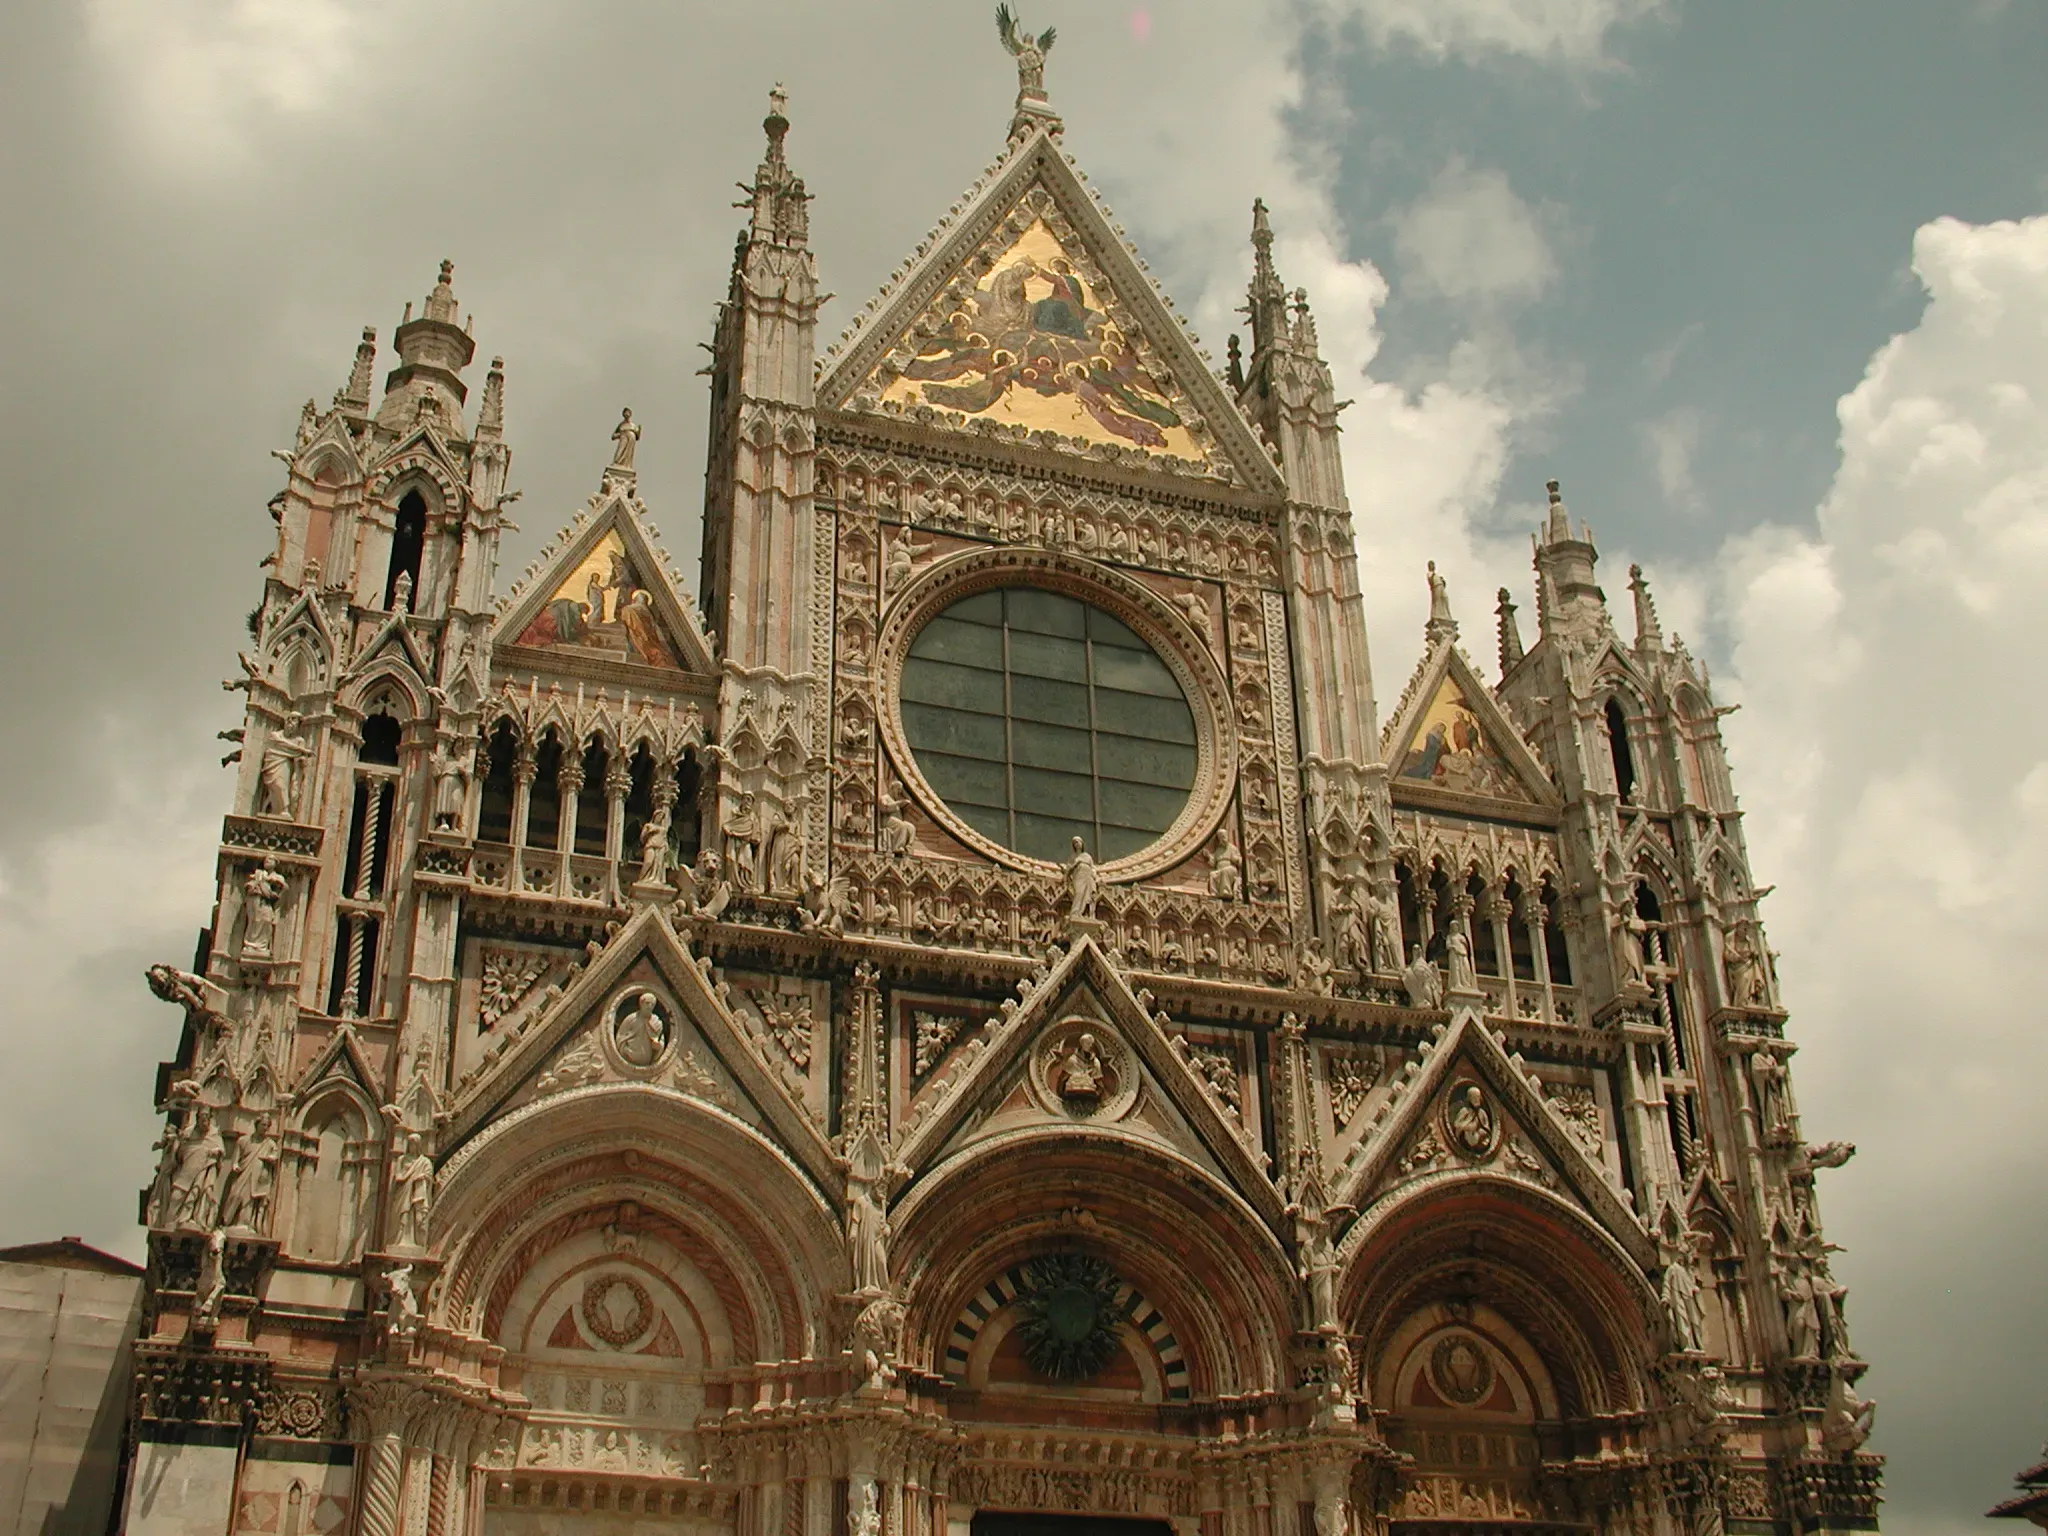 Cattedrale di Santa Maria del Fiore - Florence Cathedral